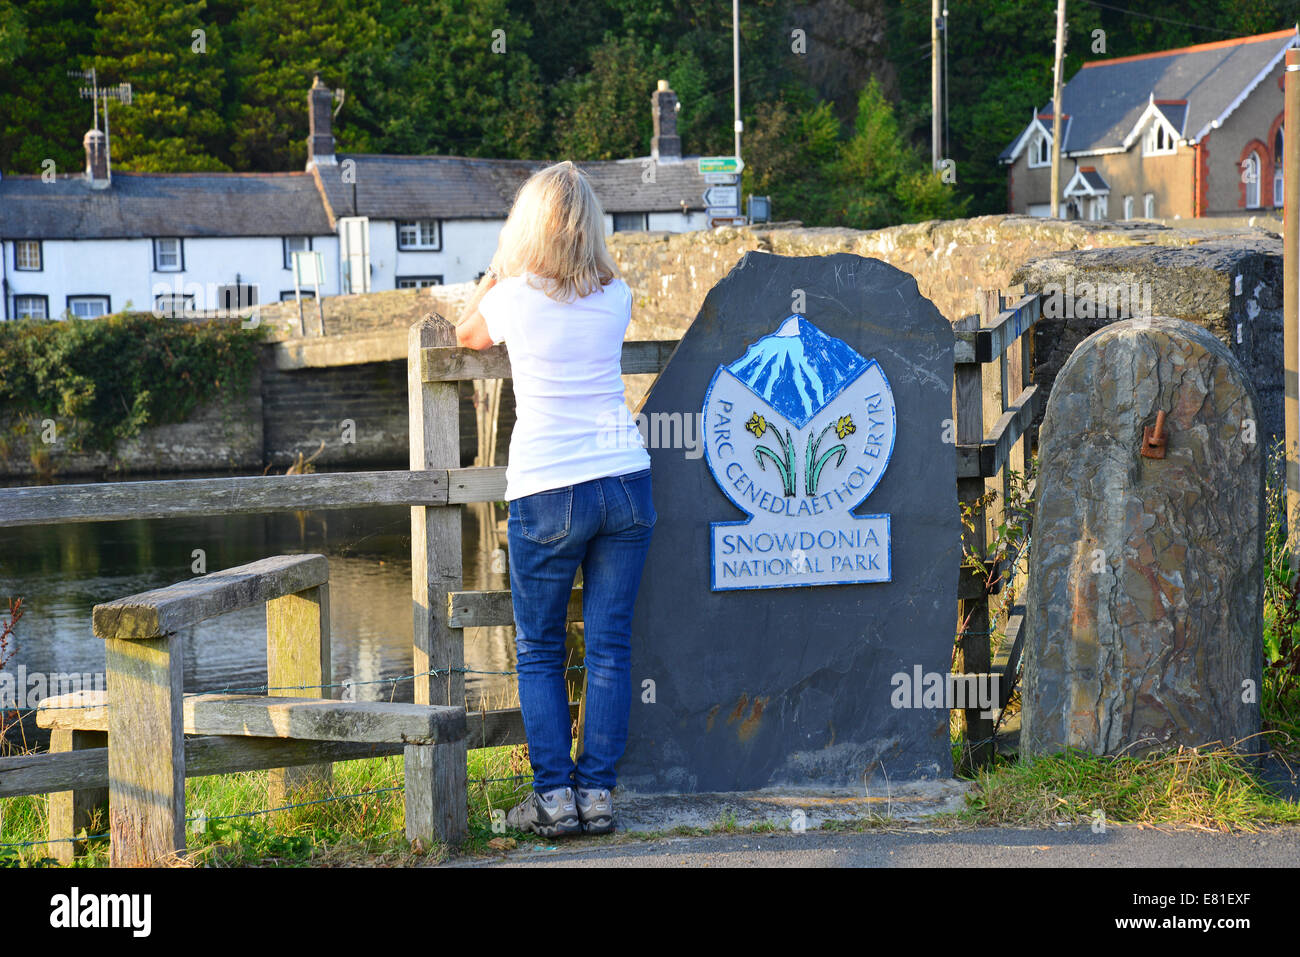 Sign at entrance to Snowdonia National Park by Machynlleth bridge, Gwynedd, Wales (Cymru), United Kingdom Stock Photo